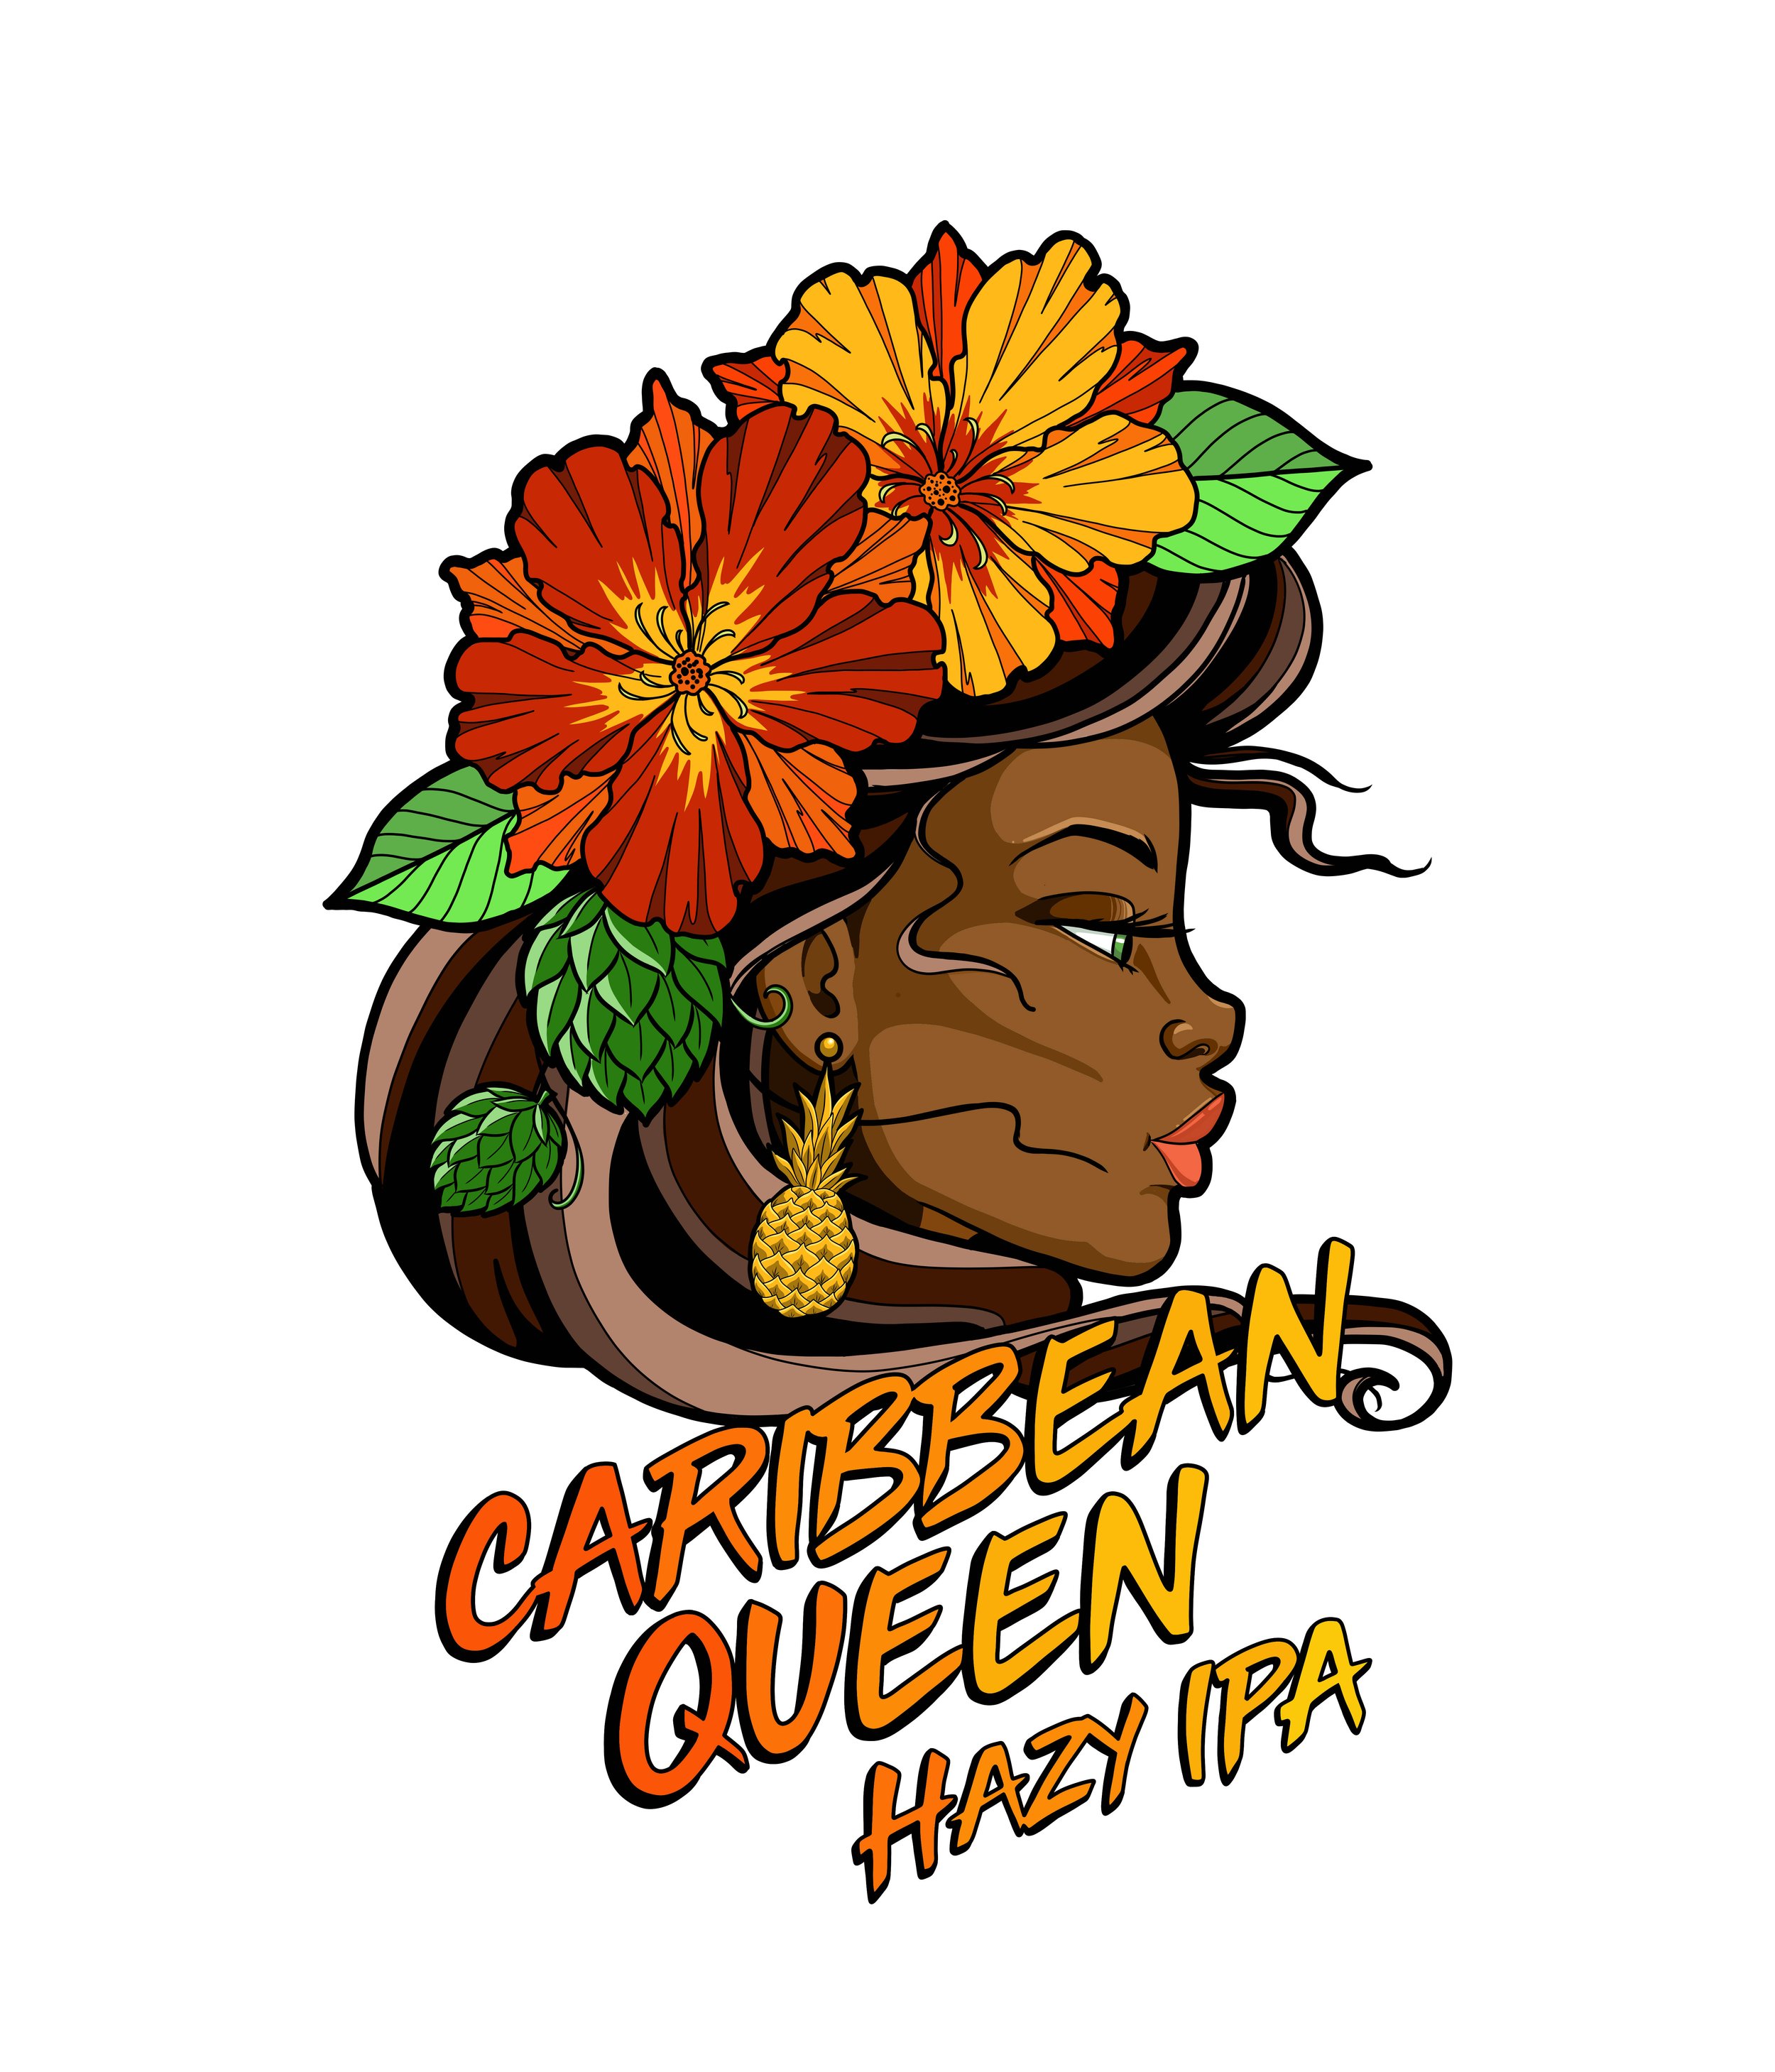 Caribbean Queen_Untappd.jpg